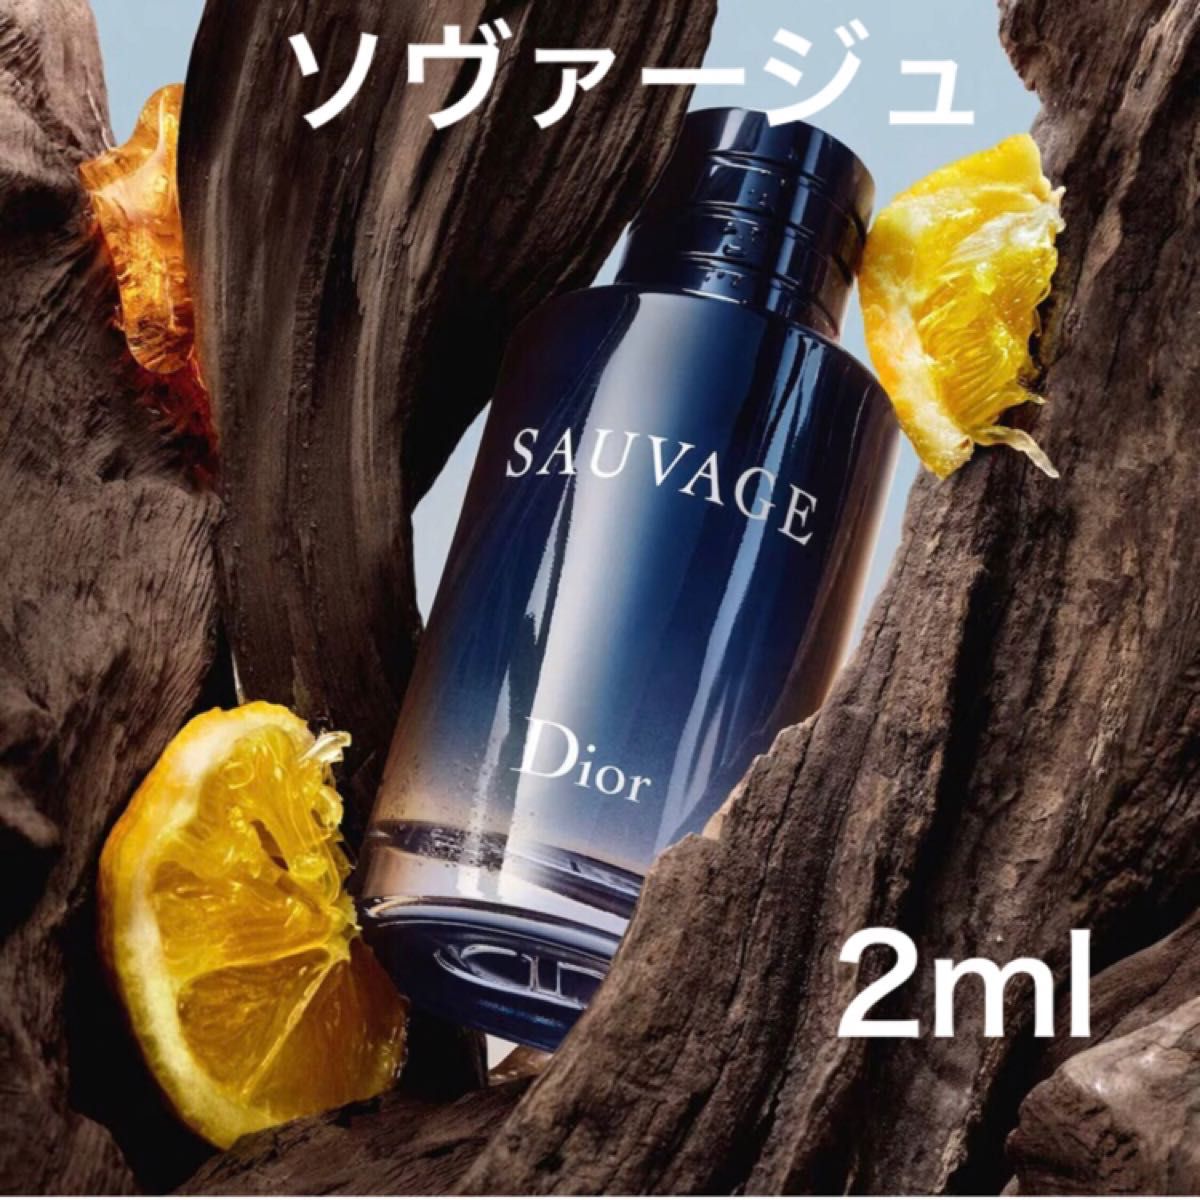 香水 ディオール Dior ソヴァージュ 2ml お試し - 香水(男性用)